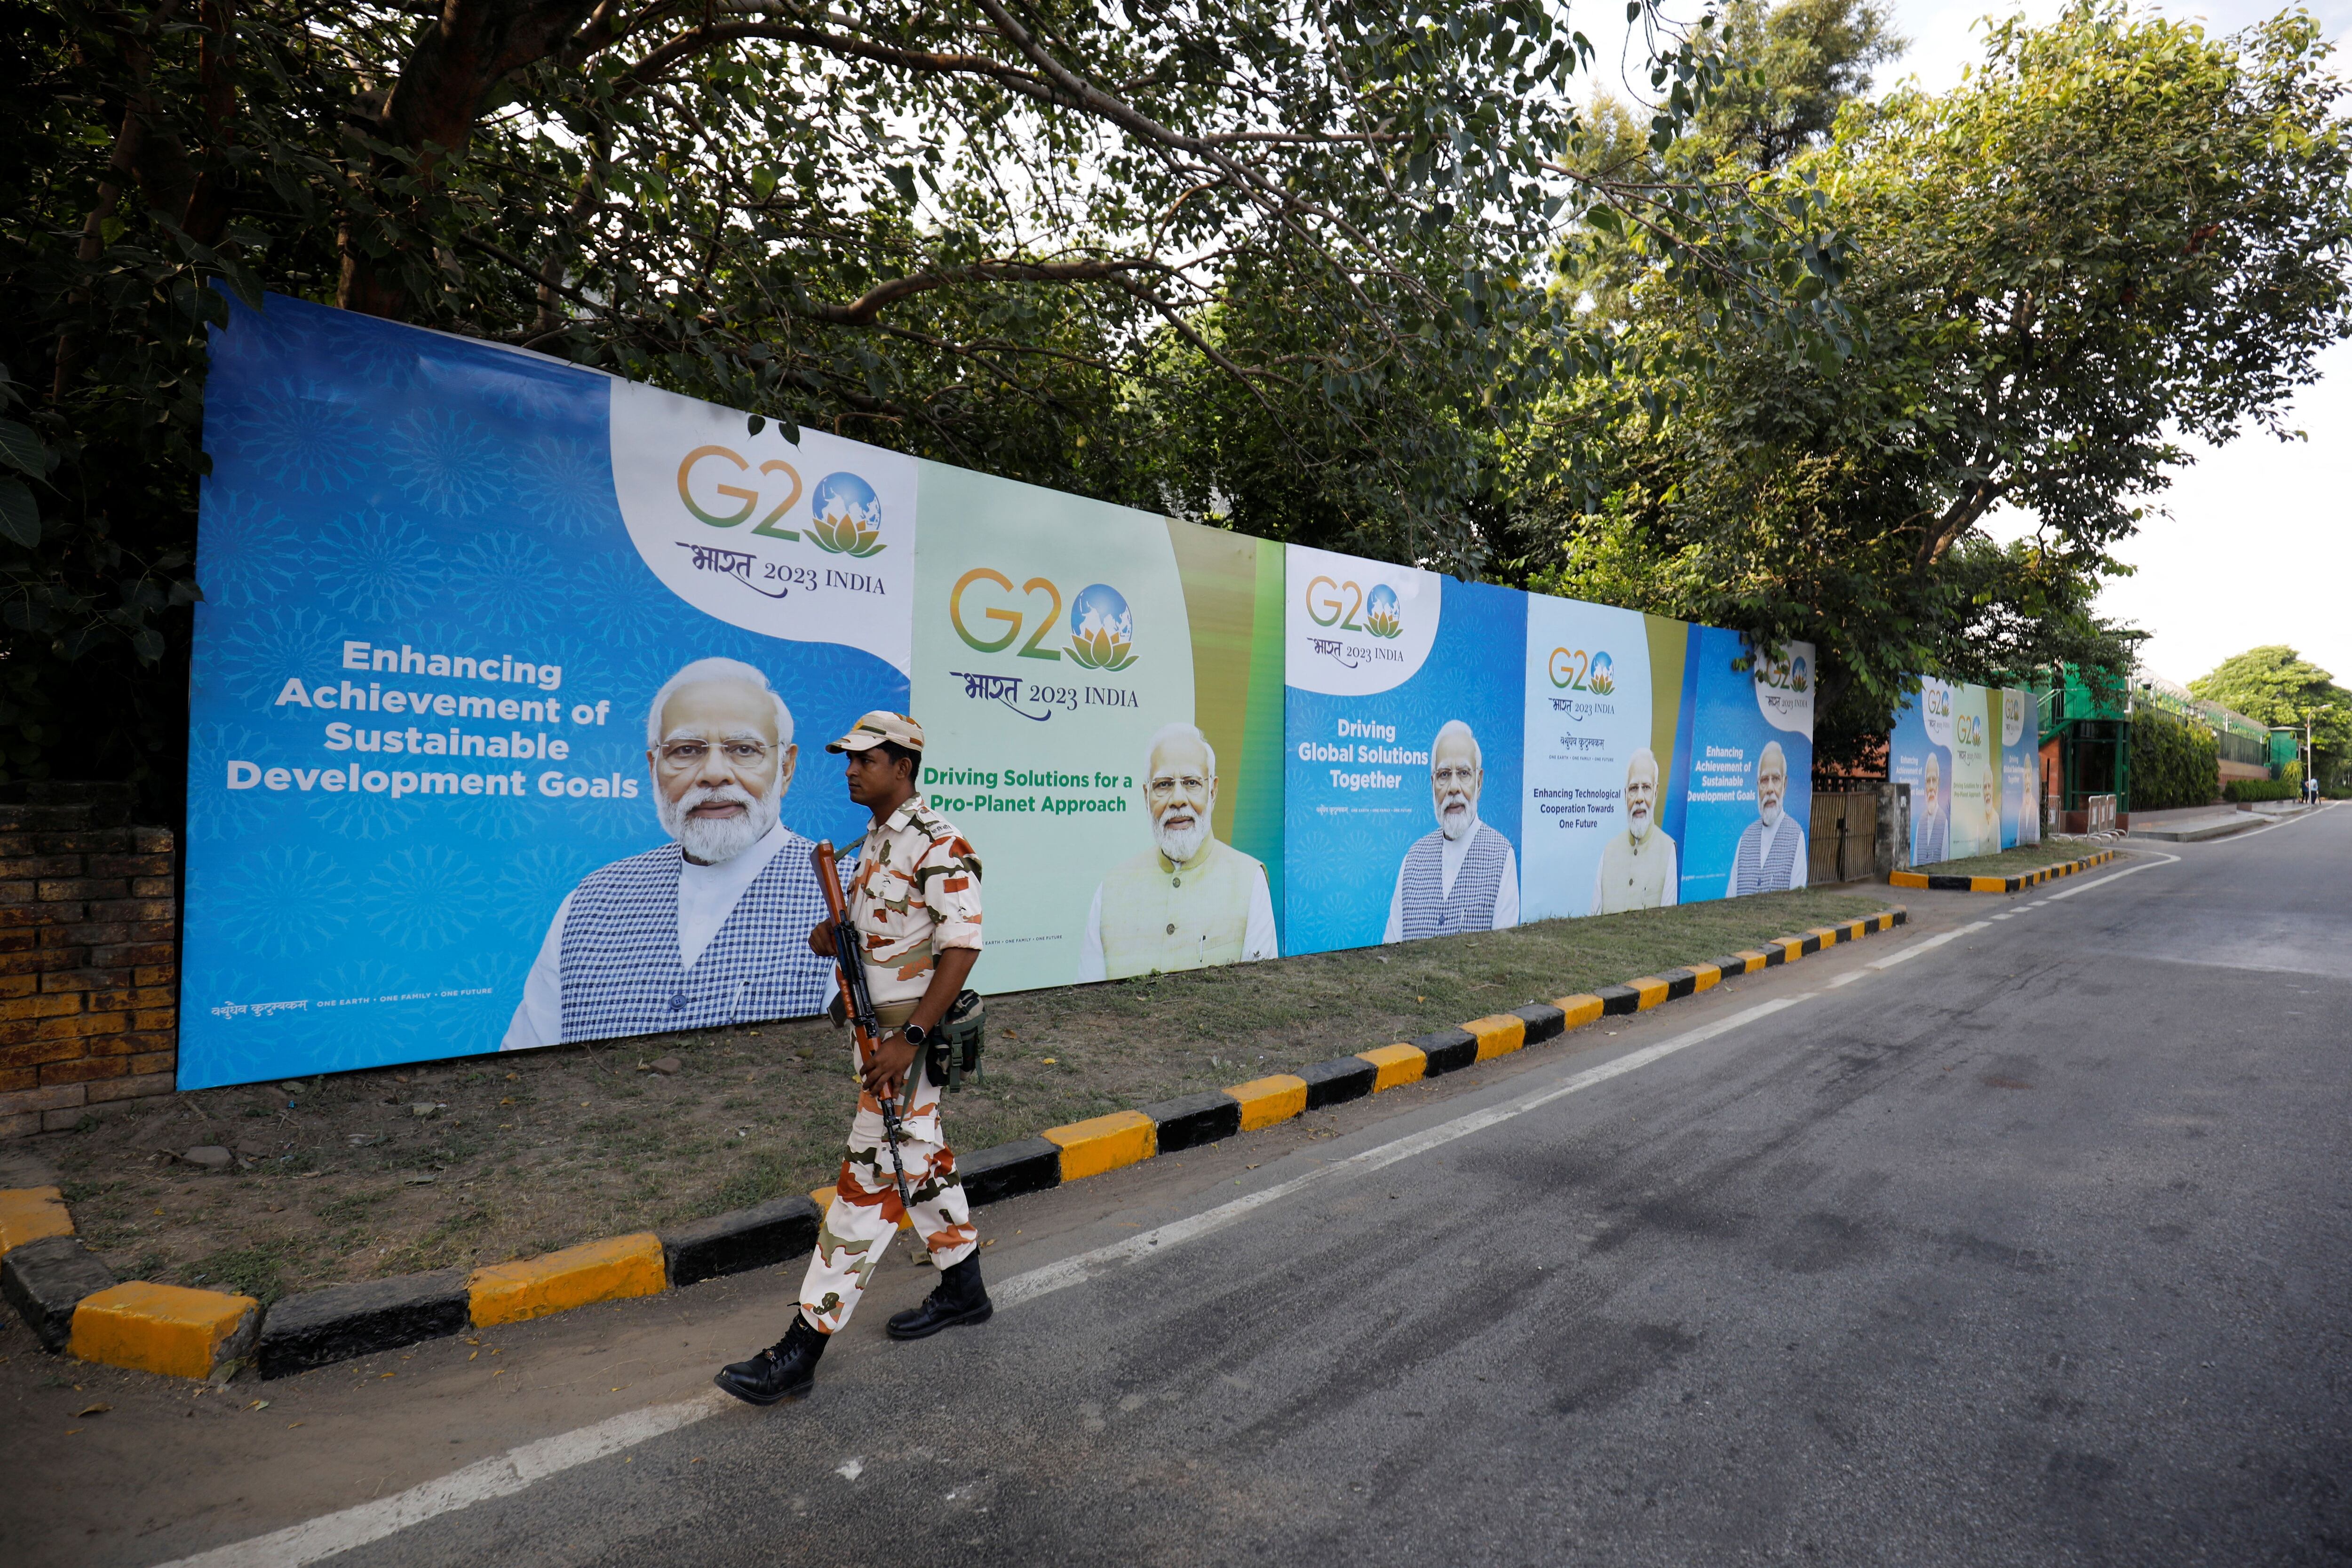 Un miembro de las fuerzas de seguridad patrulla junto a unas vallas en las que aparece el primer ministro indio, Narendra Modi, en una carretera vacía antes de la Cumbre del G20 en Nueva Delhi, India, 8 de septiembre de 2023. REUTERS/Amit Dave